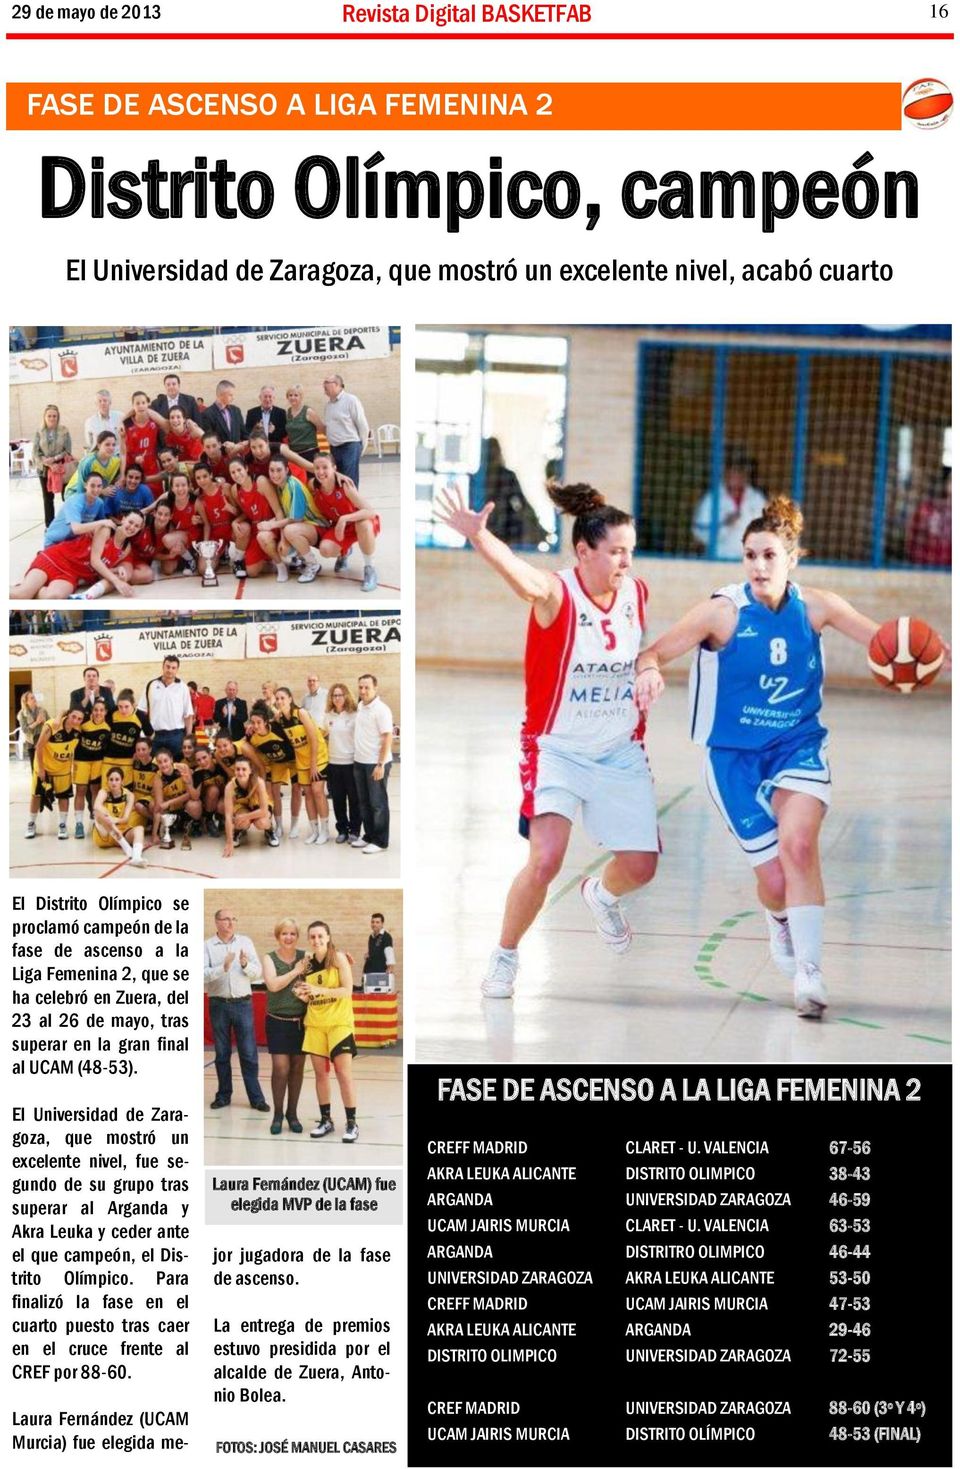 El Universidad de Zaragoza, que mostró un excelente nivel, fue segundo de su grupo tras superar al Arganda y Akra Leuka y ceder ante el que campeón, el Distrito Olímpico.